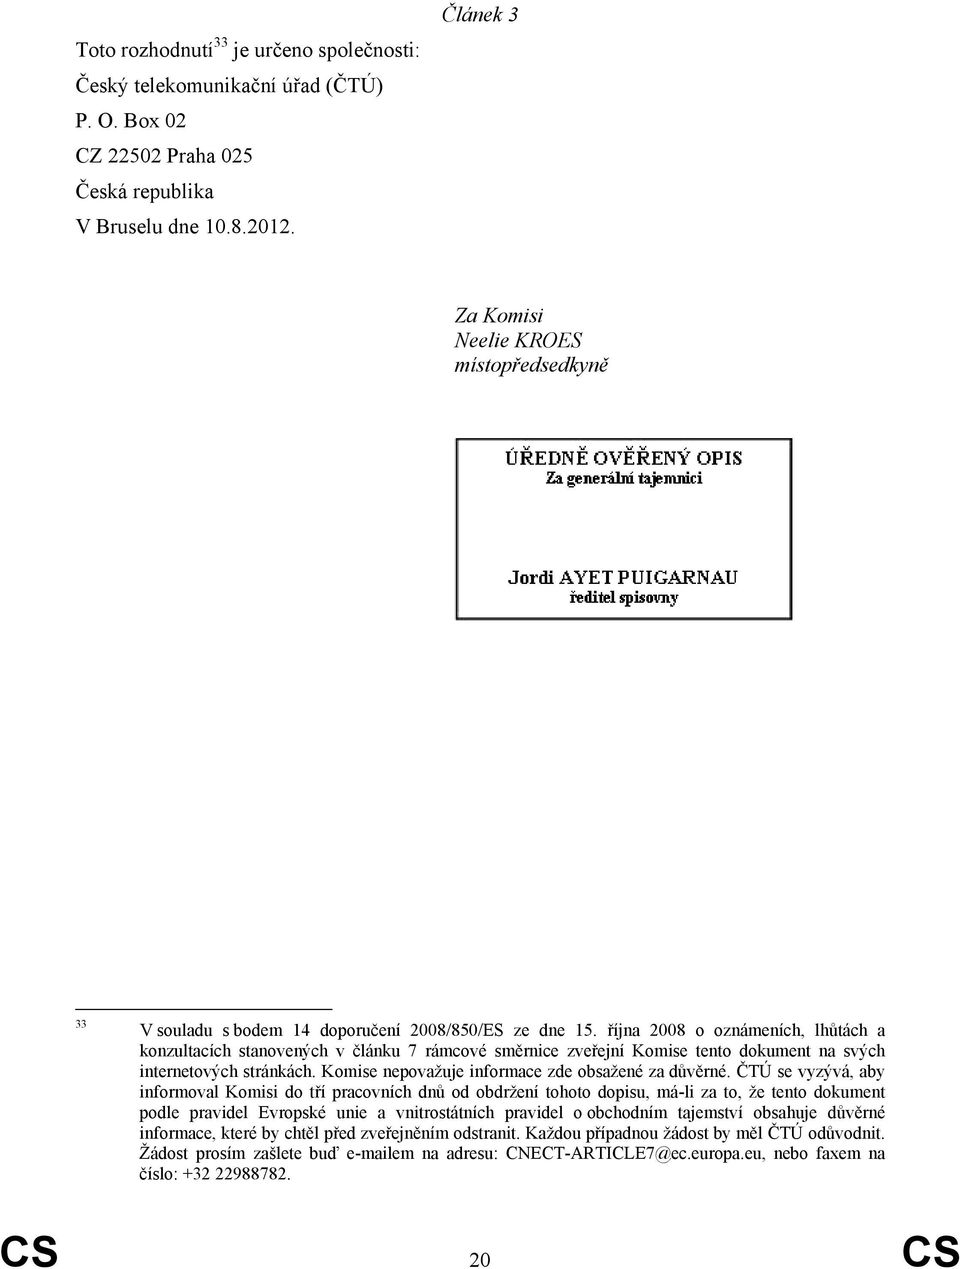 října 2008 o oznámeních, lhůtách a konzultacích stanovených v článku 7 rámcové směrnice zveřejní Komise tento dokument na svých internetových stránkách.